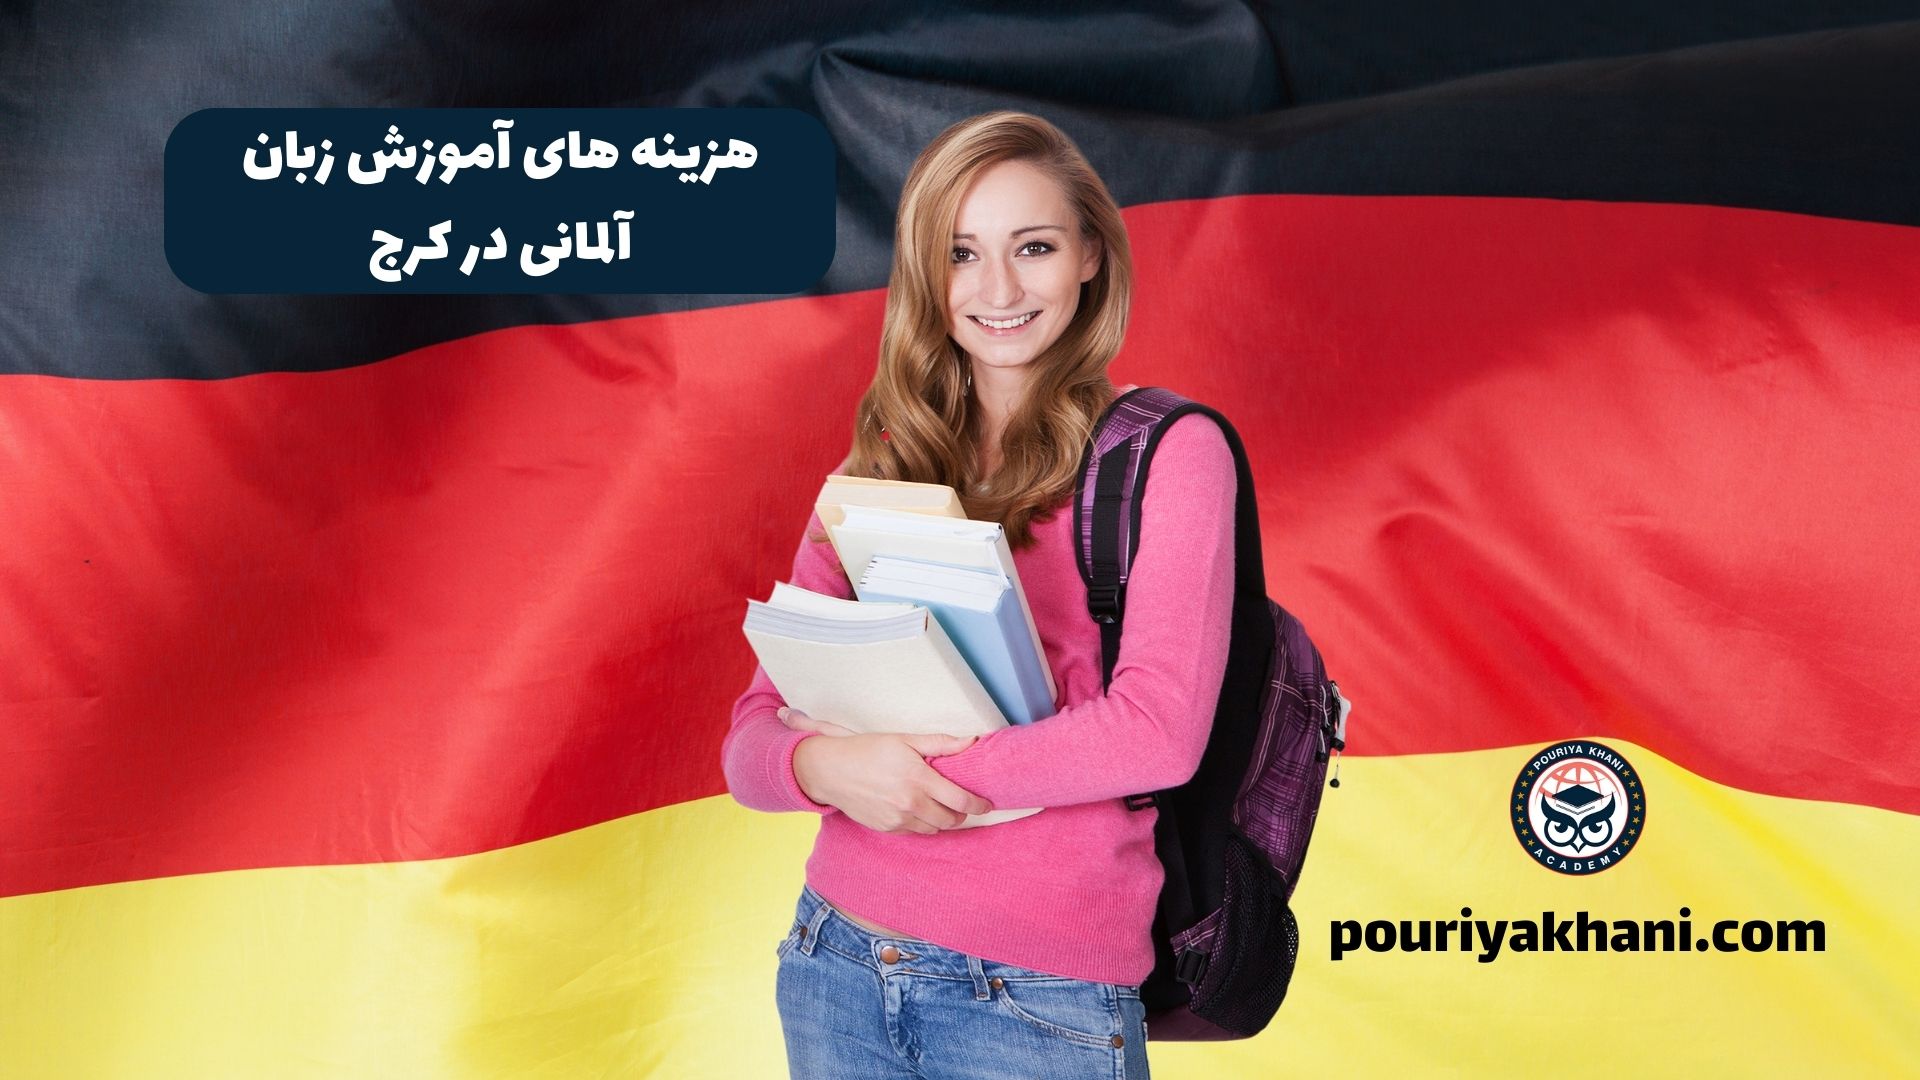 هزینه های آموزش زبان آلمانی در کرج